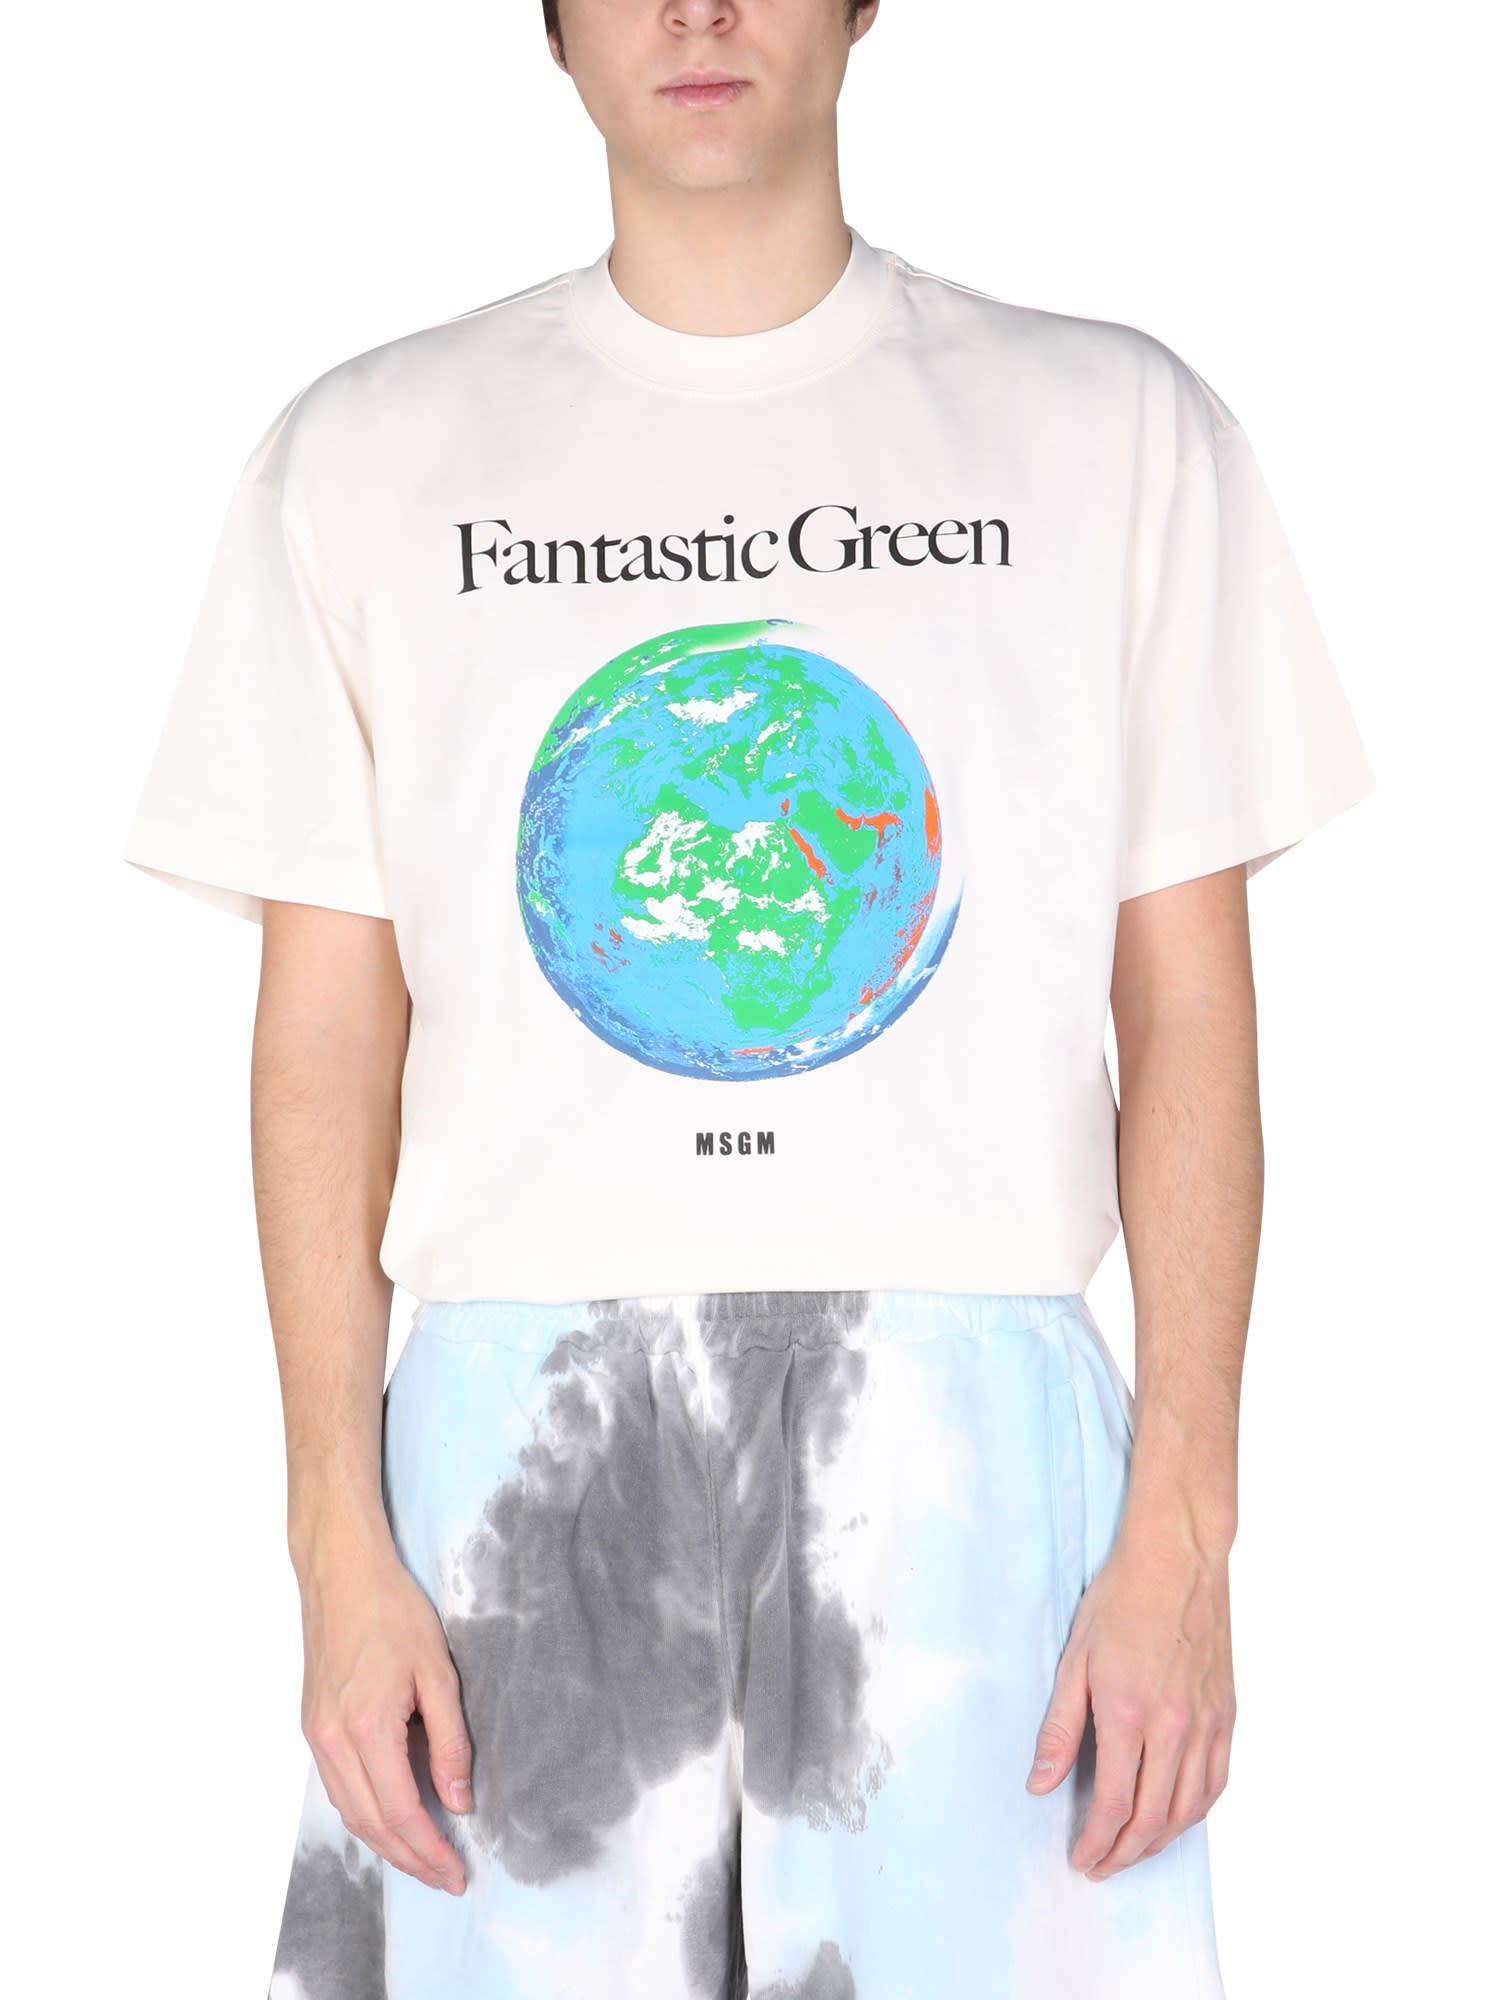 MSGM Fantstic Green T-shirt